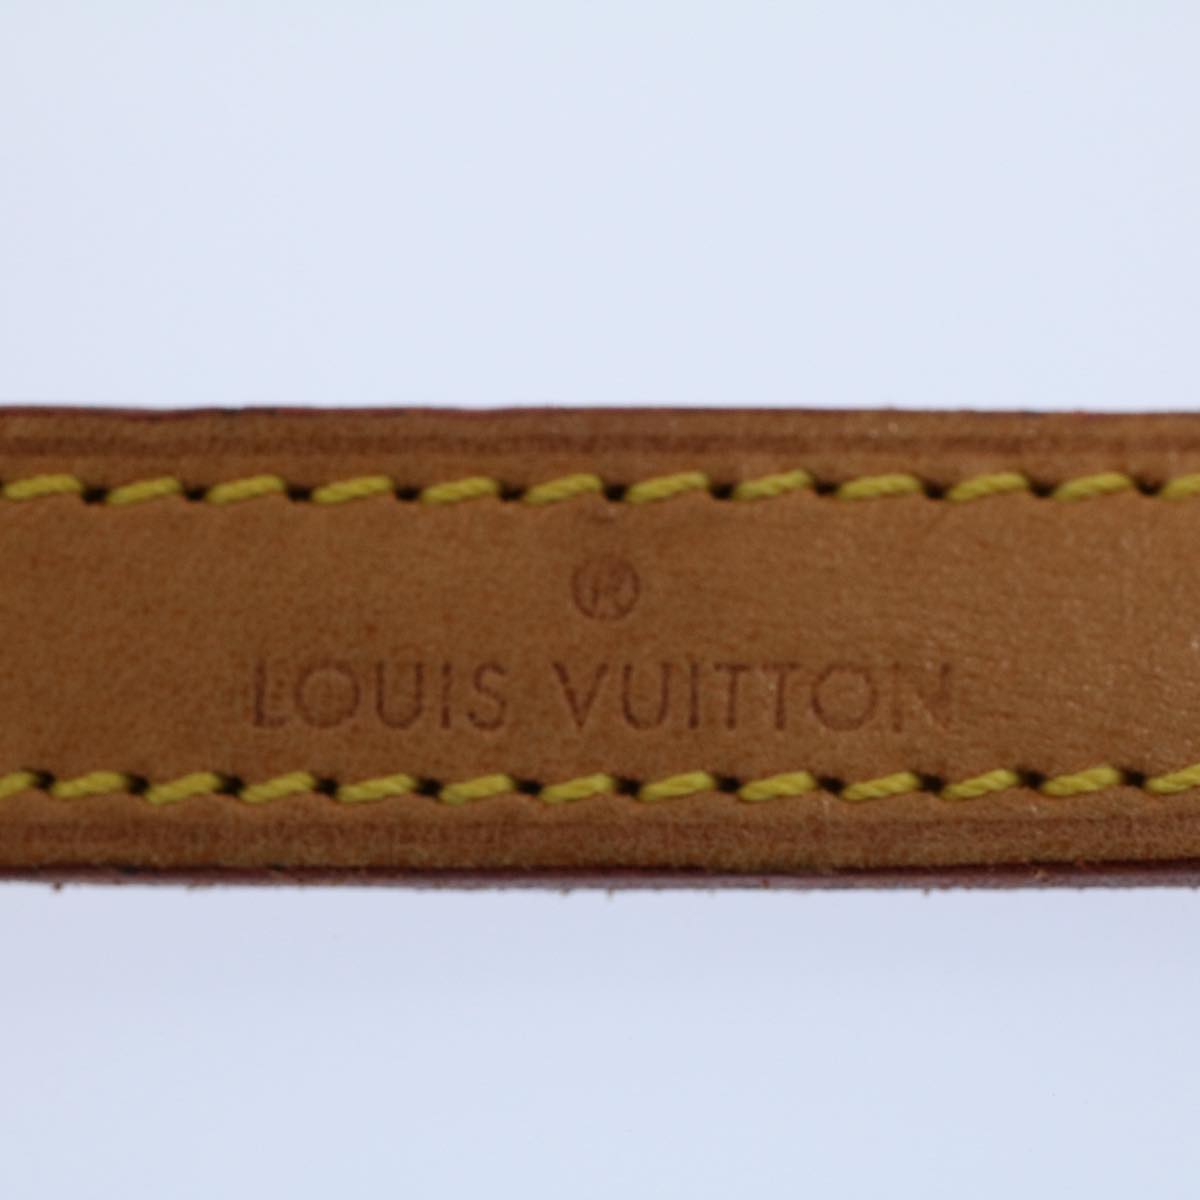 LOUIS VUITTON Shoulder Strap Leather 47.2"" Beige LV Auth 55788